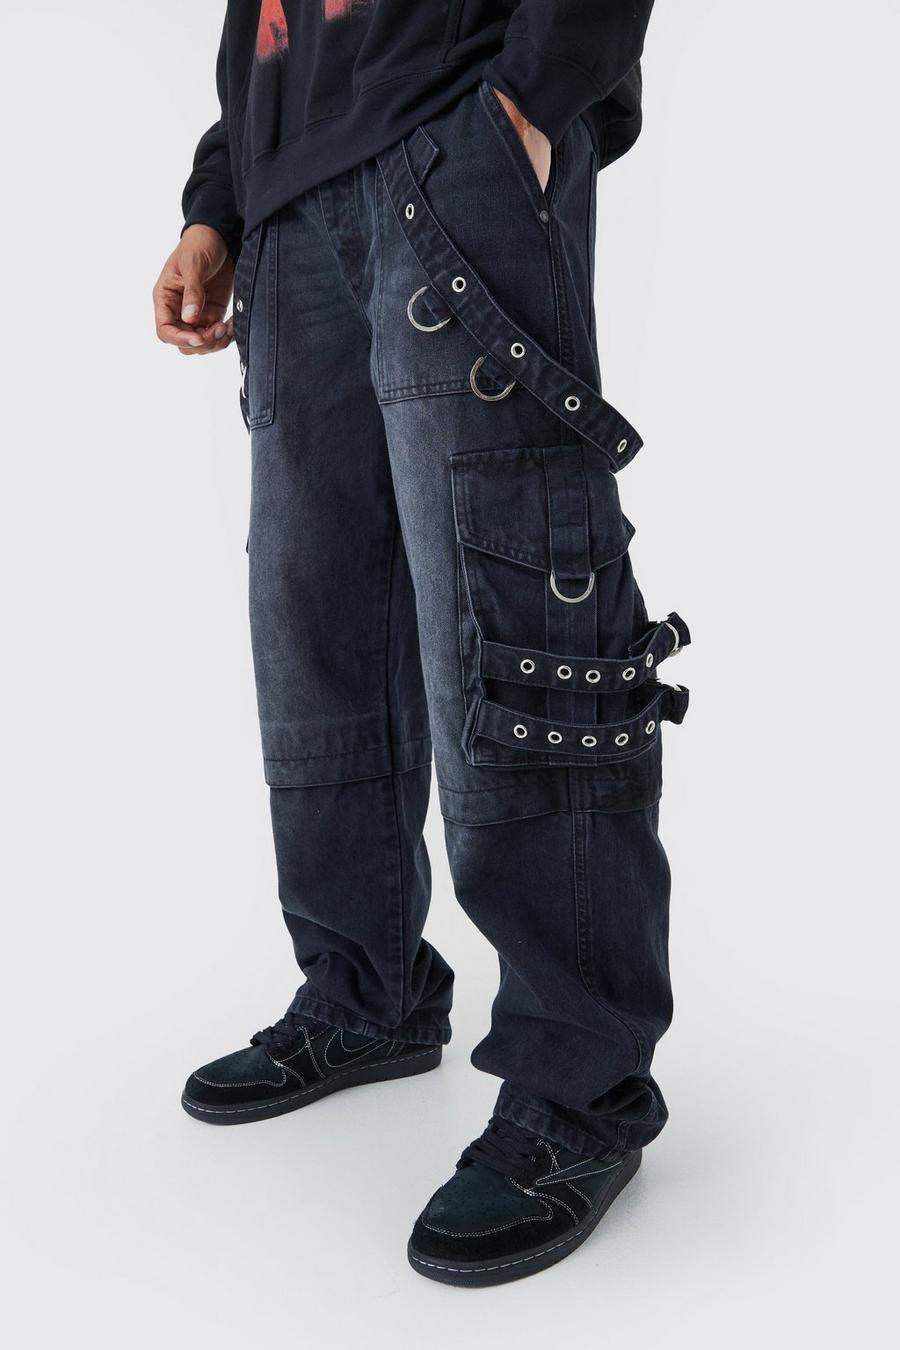 Lockere Cargo-Jeans in gewaschenem Schwarz, Washed black